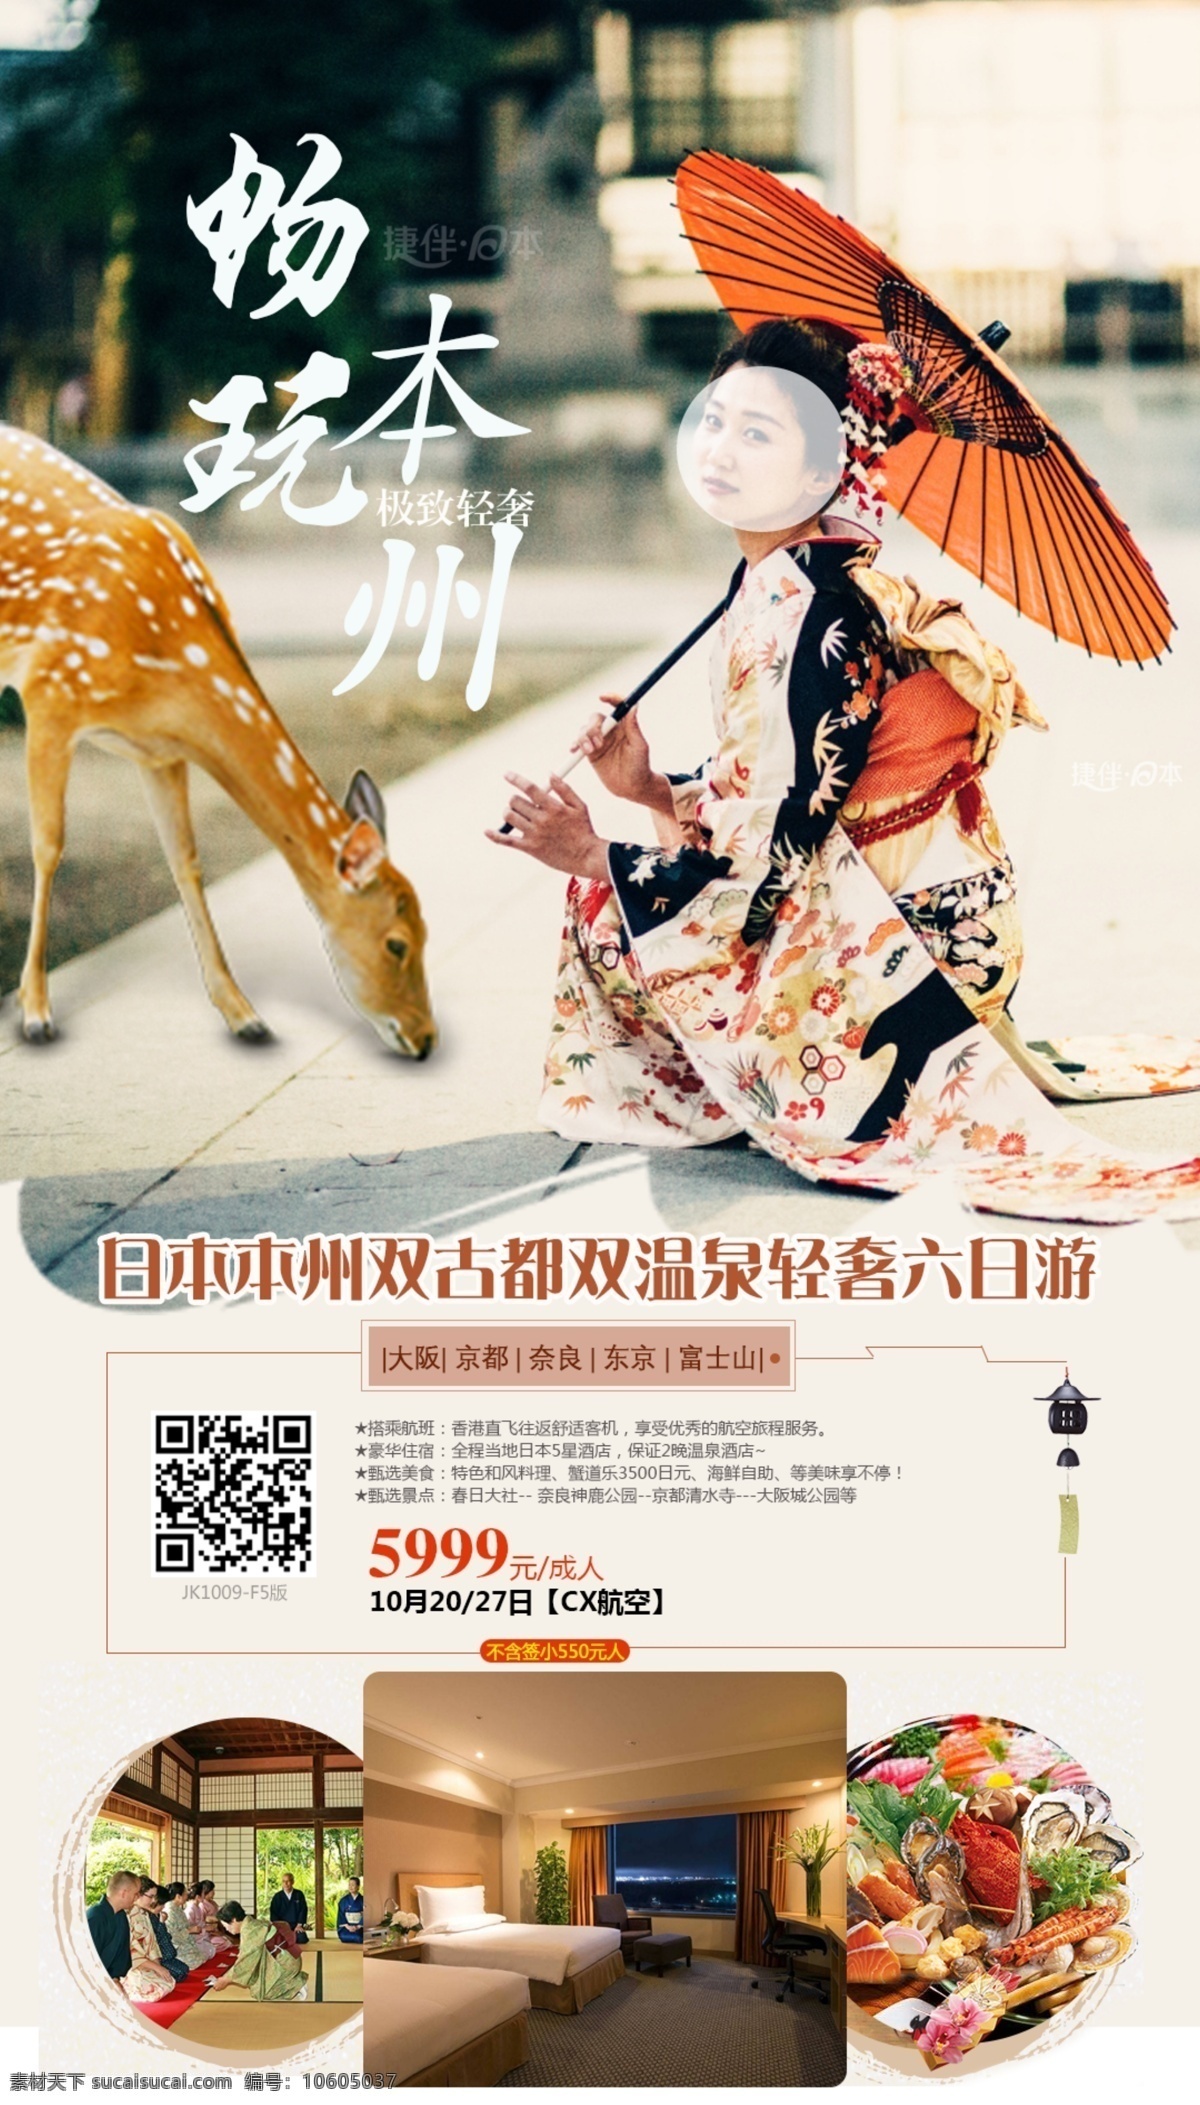 日本旅游海报 日本旅游 和服体验 日本特色之旅 日本本州 微信海报